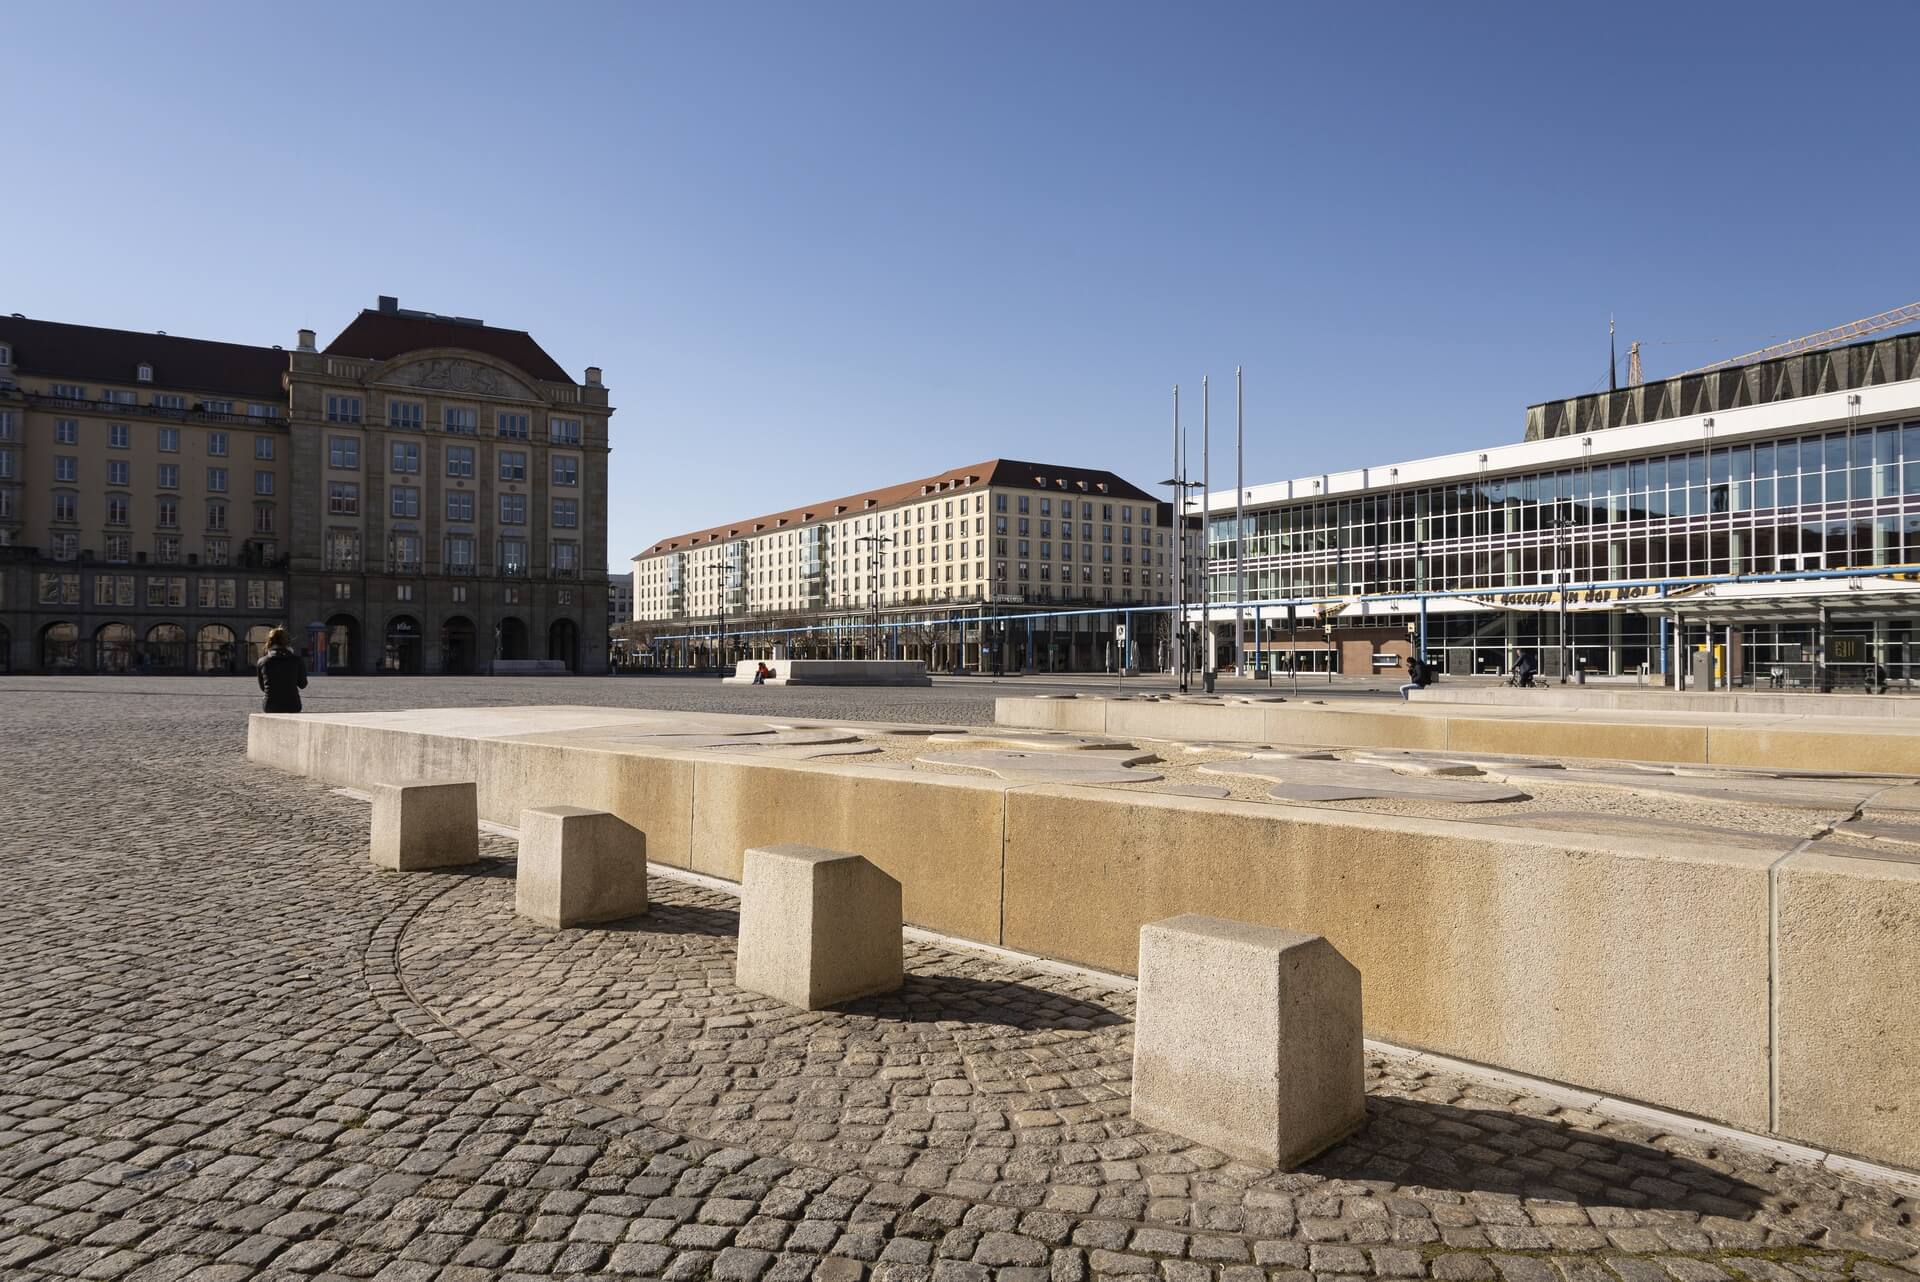 Dresden: Altmarkt, Frühjahr 2020, Eindrücke von der Ausgangsbeschränkung während der COVID-19 Pandemie